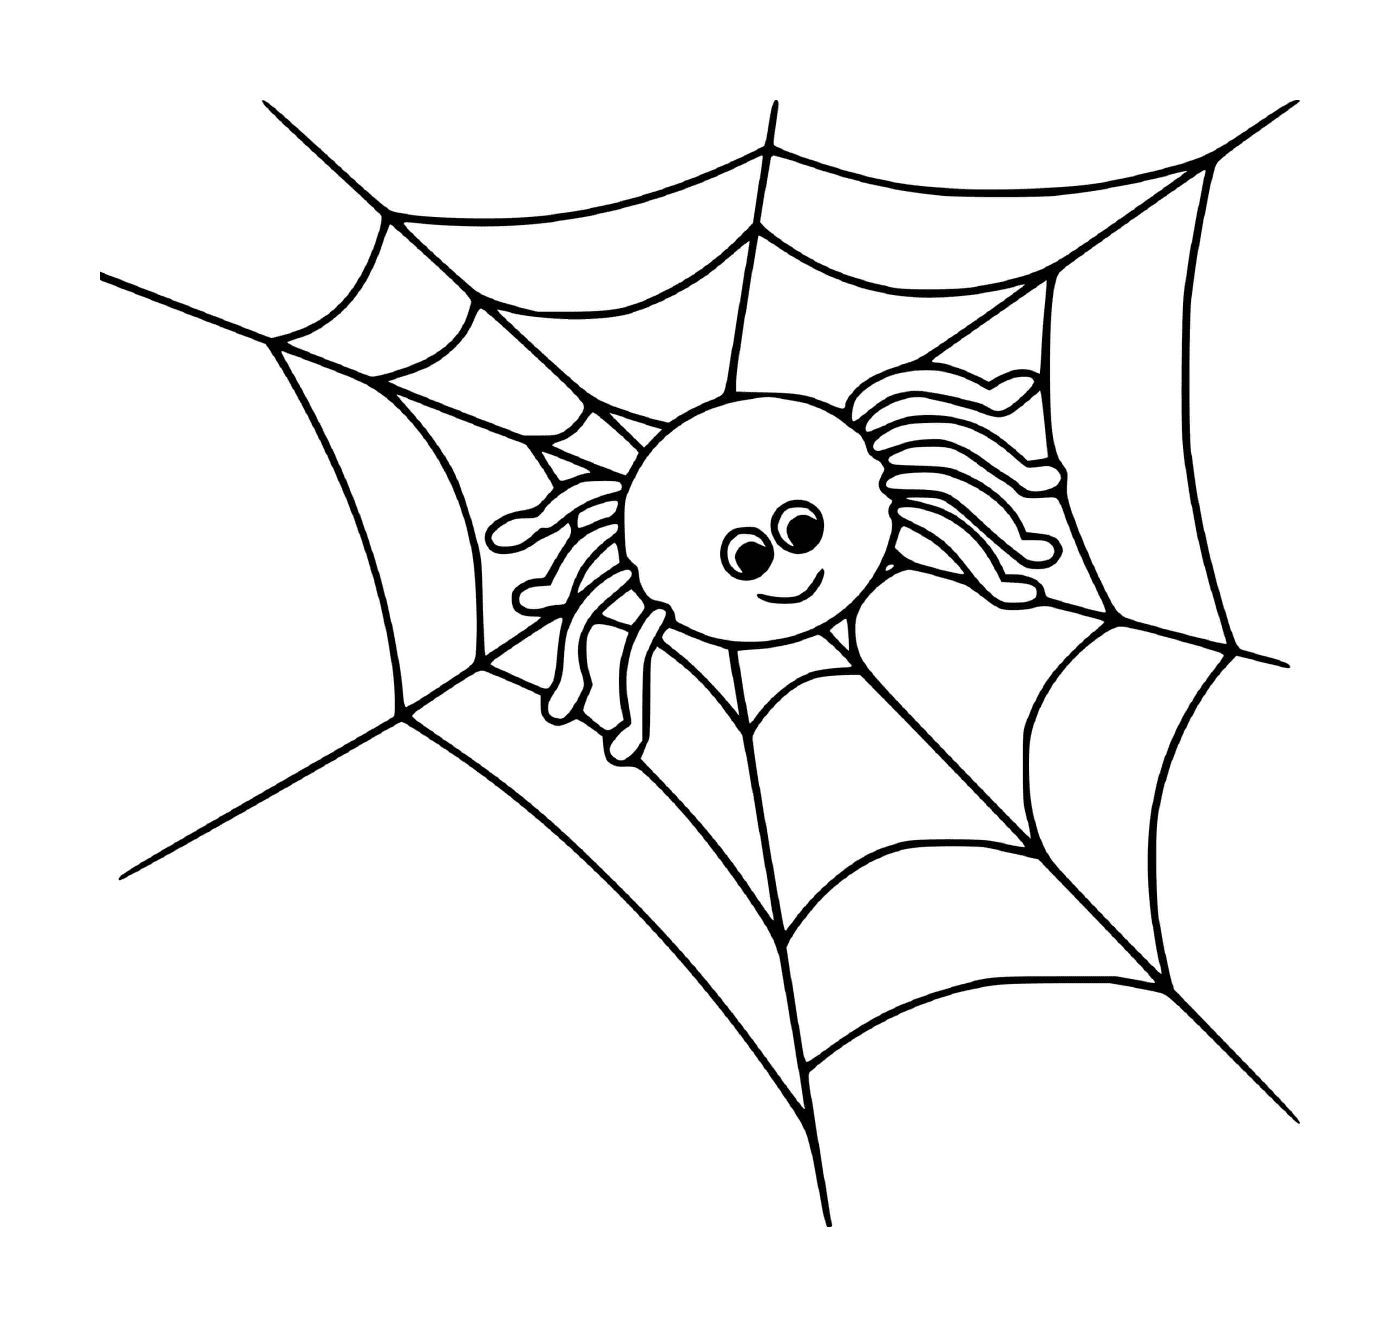  Eine niedliche Spinne auf einem Netz 